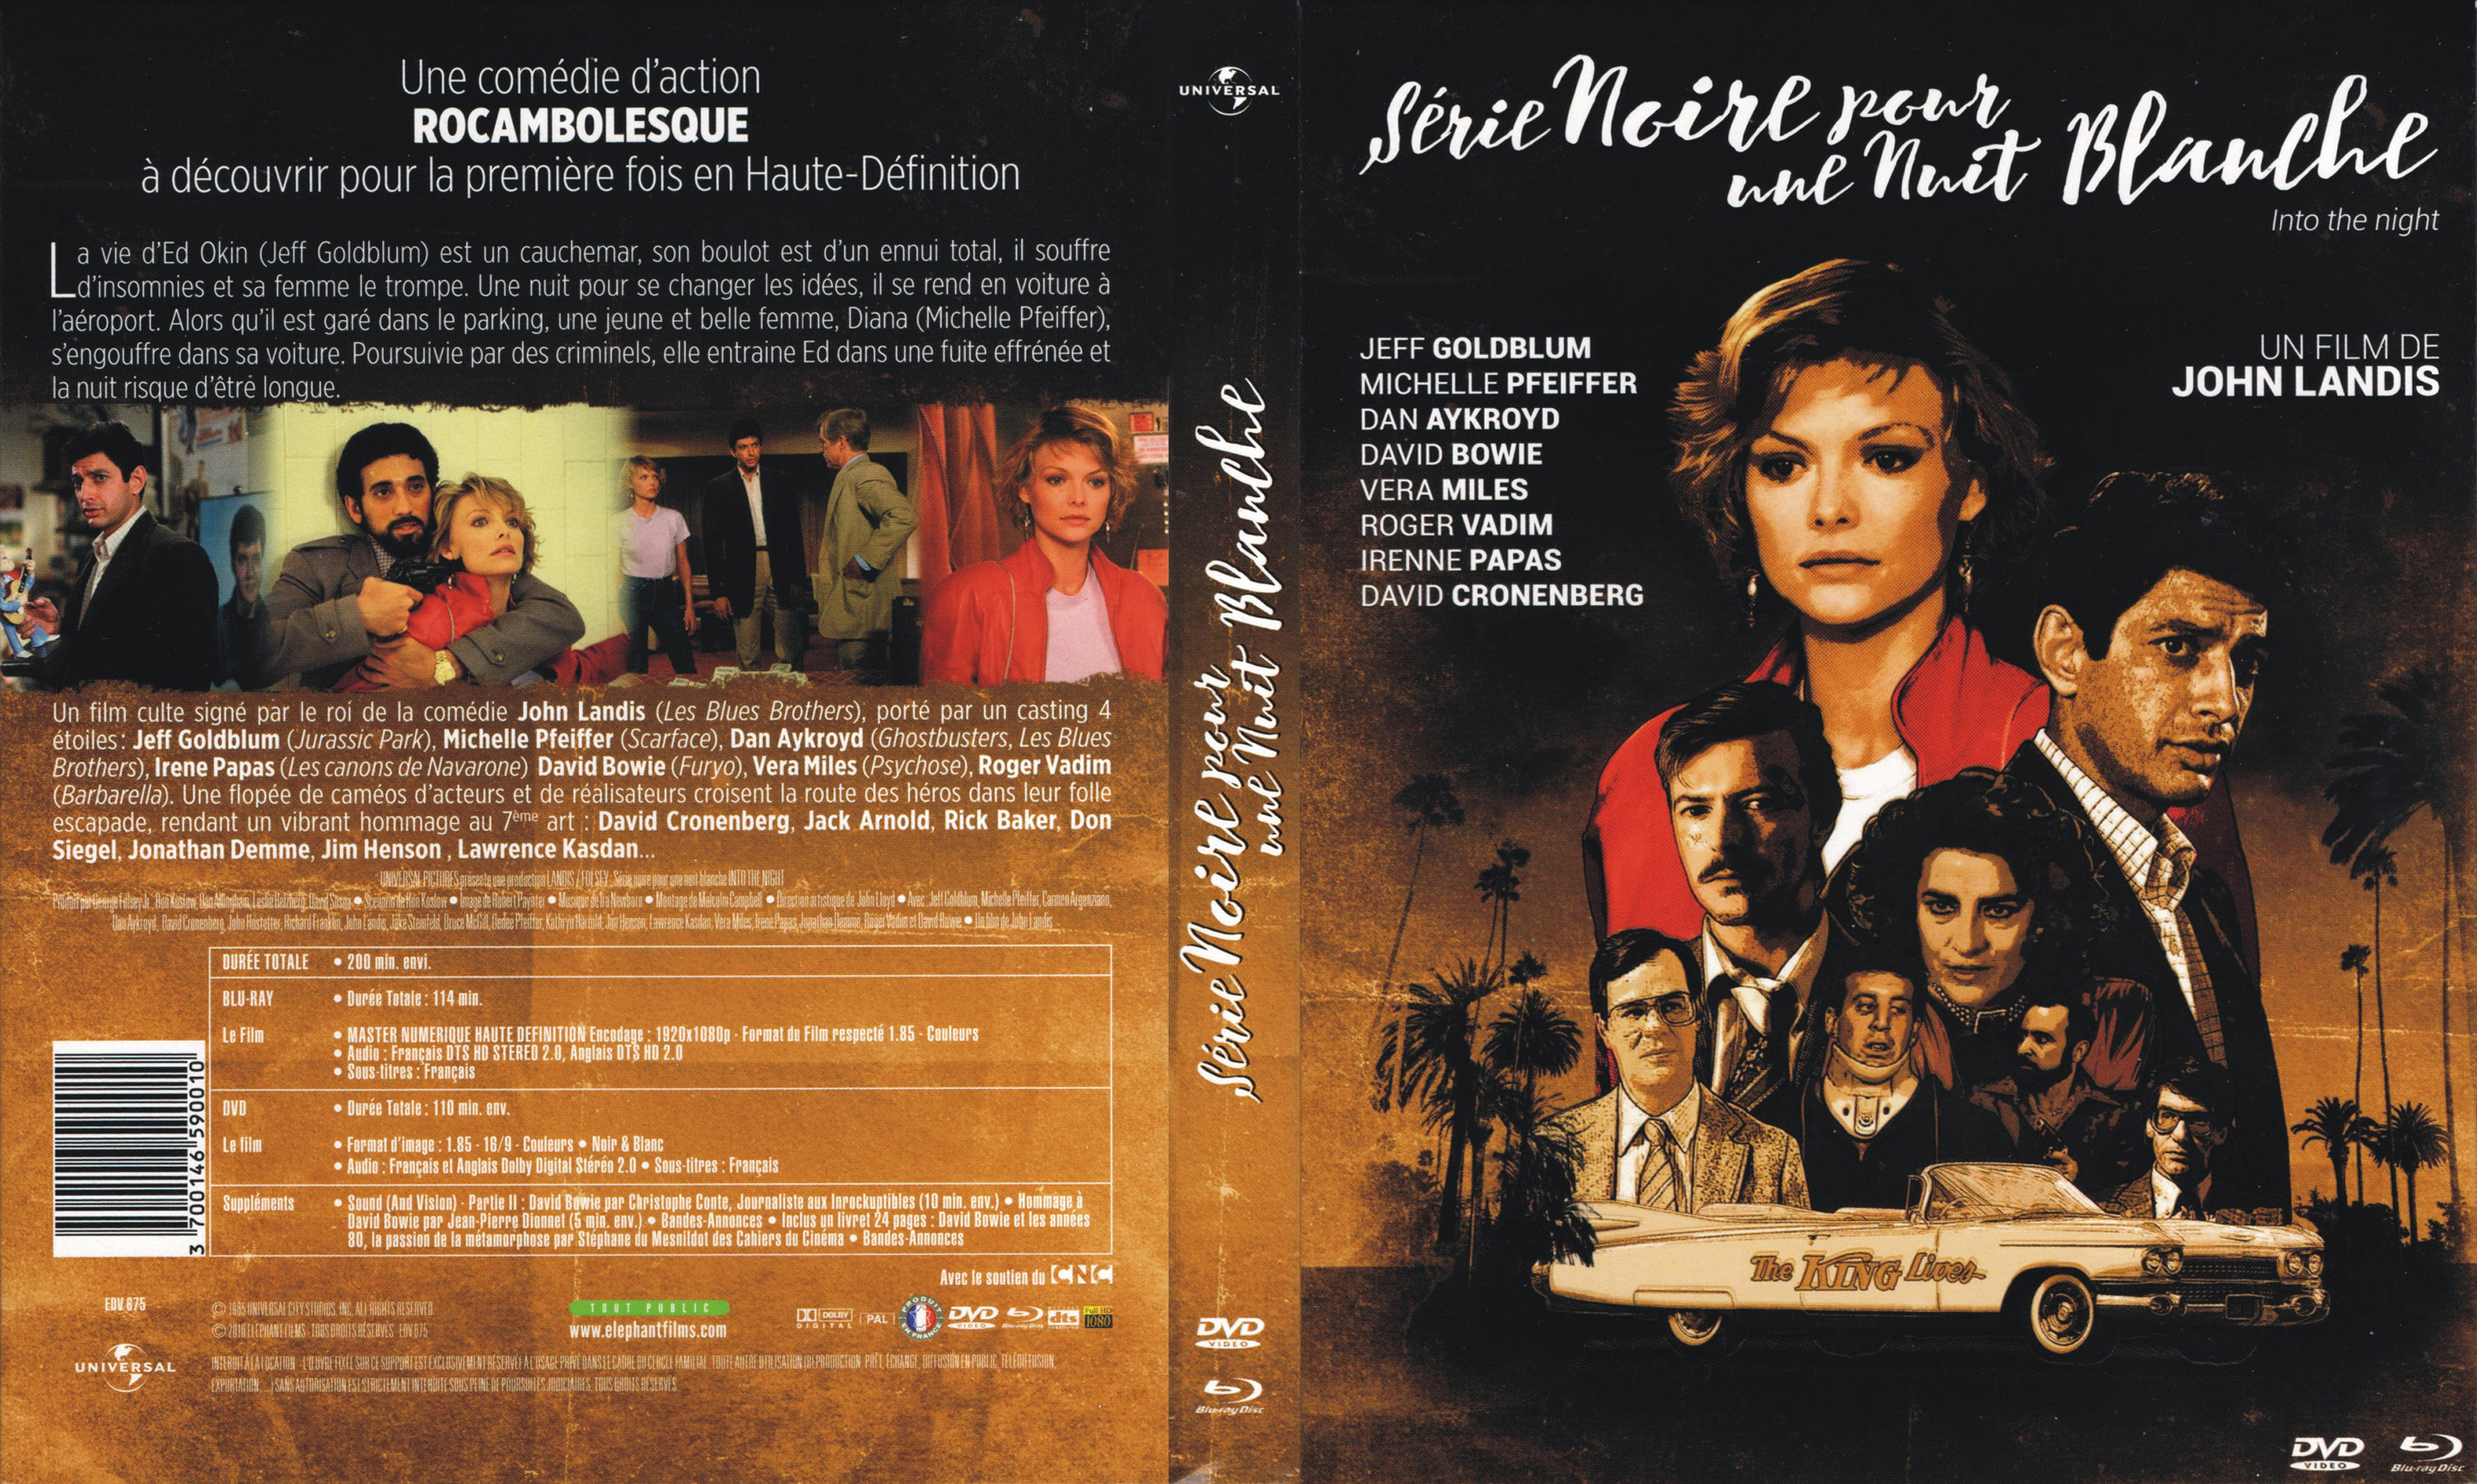 Jaquette DVD Serie noire pour une nuit blanche (BLU-RAY)